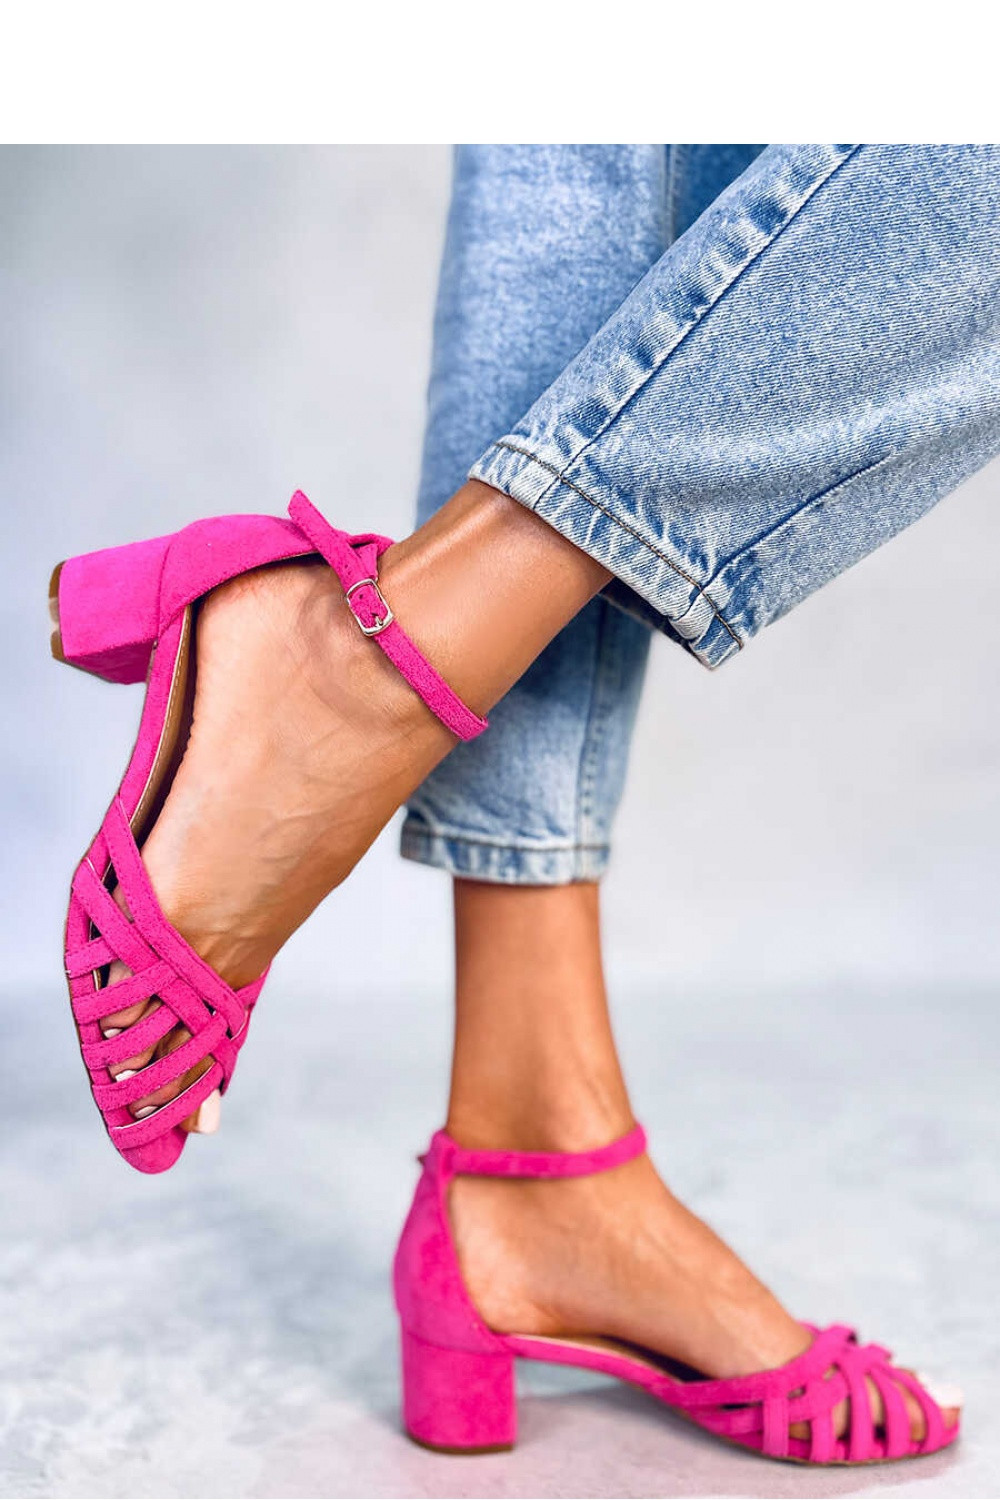 Dámské sandály na podpatku růžové model 18718002 - Inello Velikost: 36 0B, Barvy: růžová